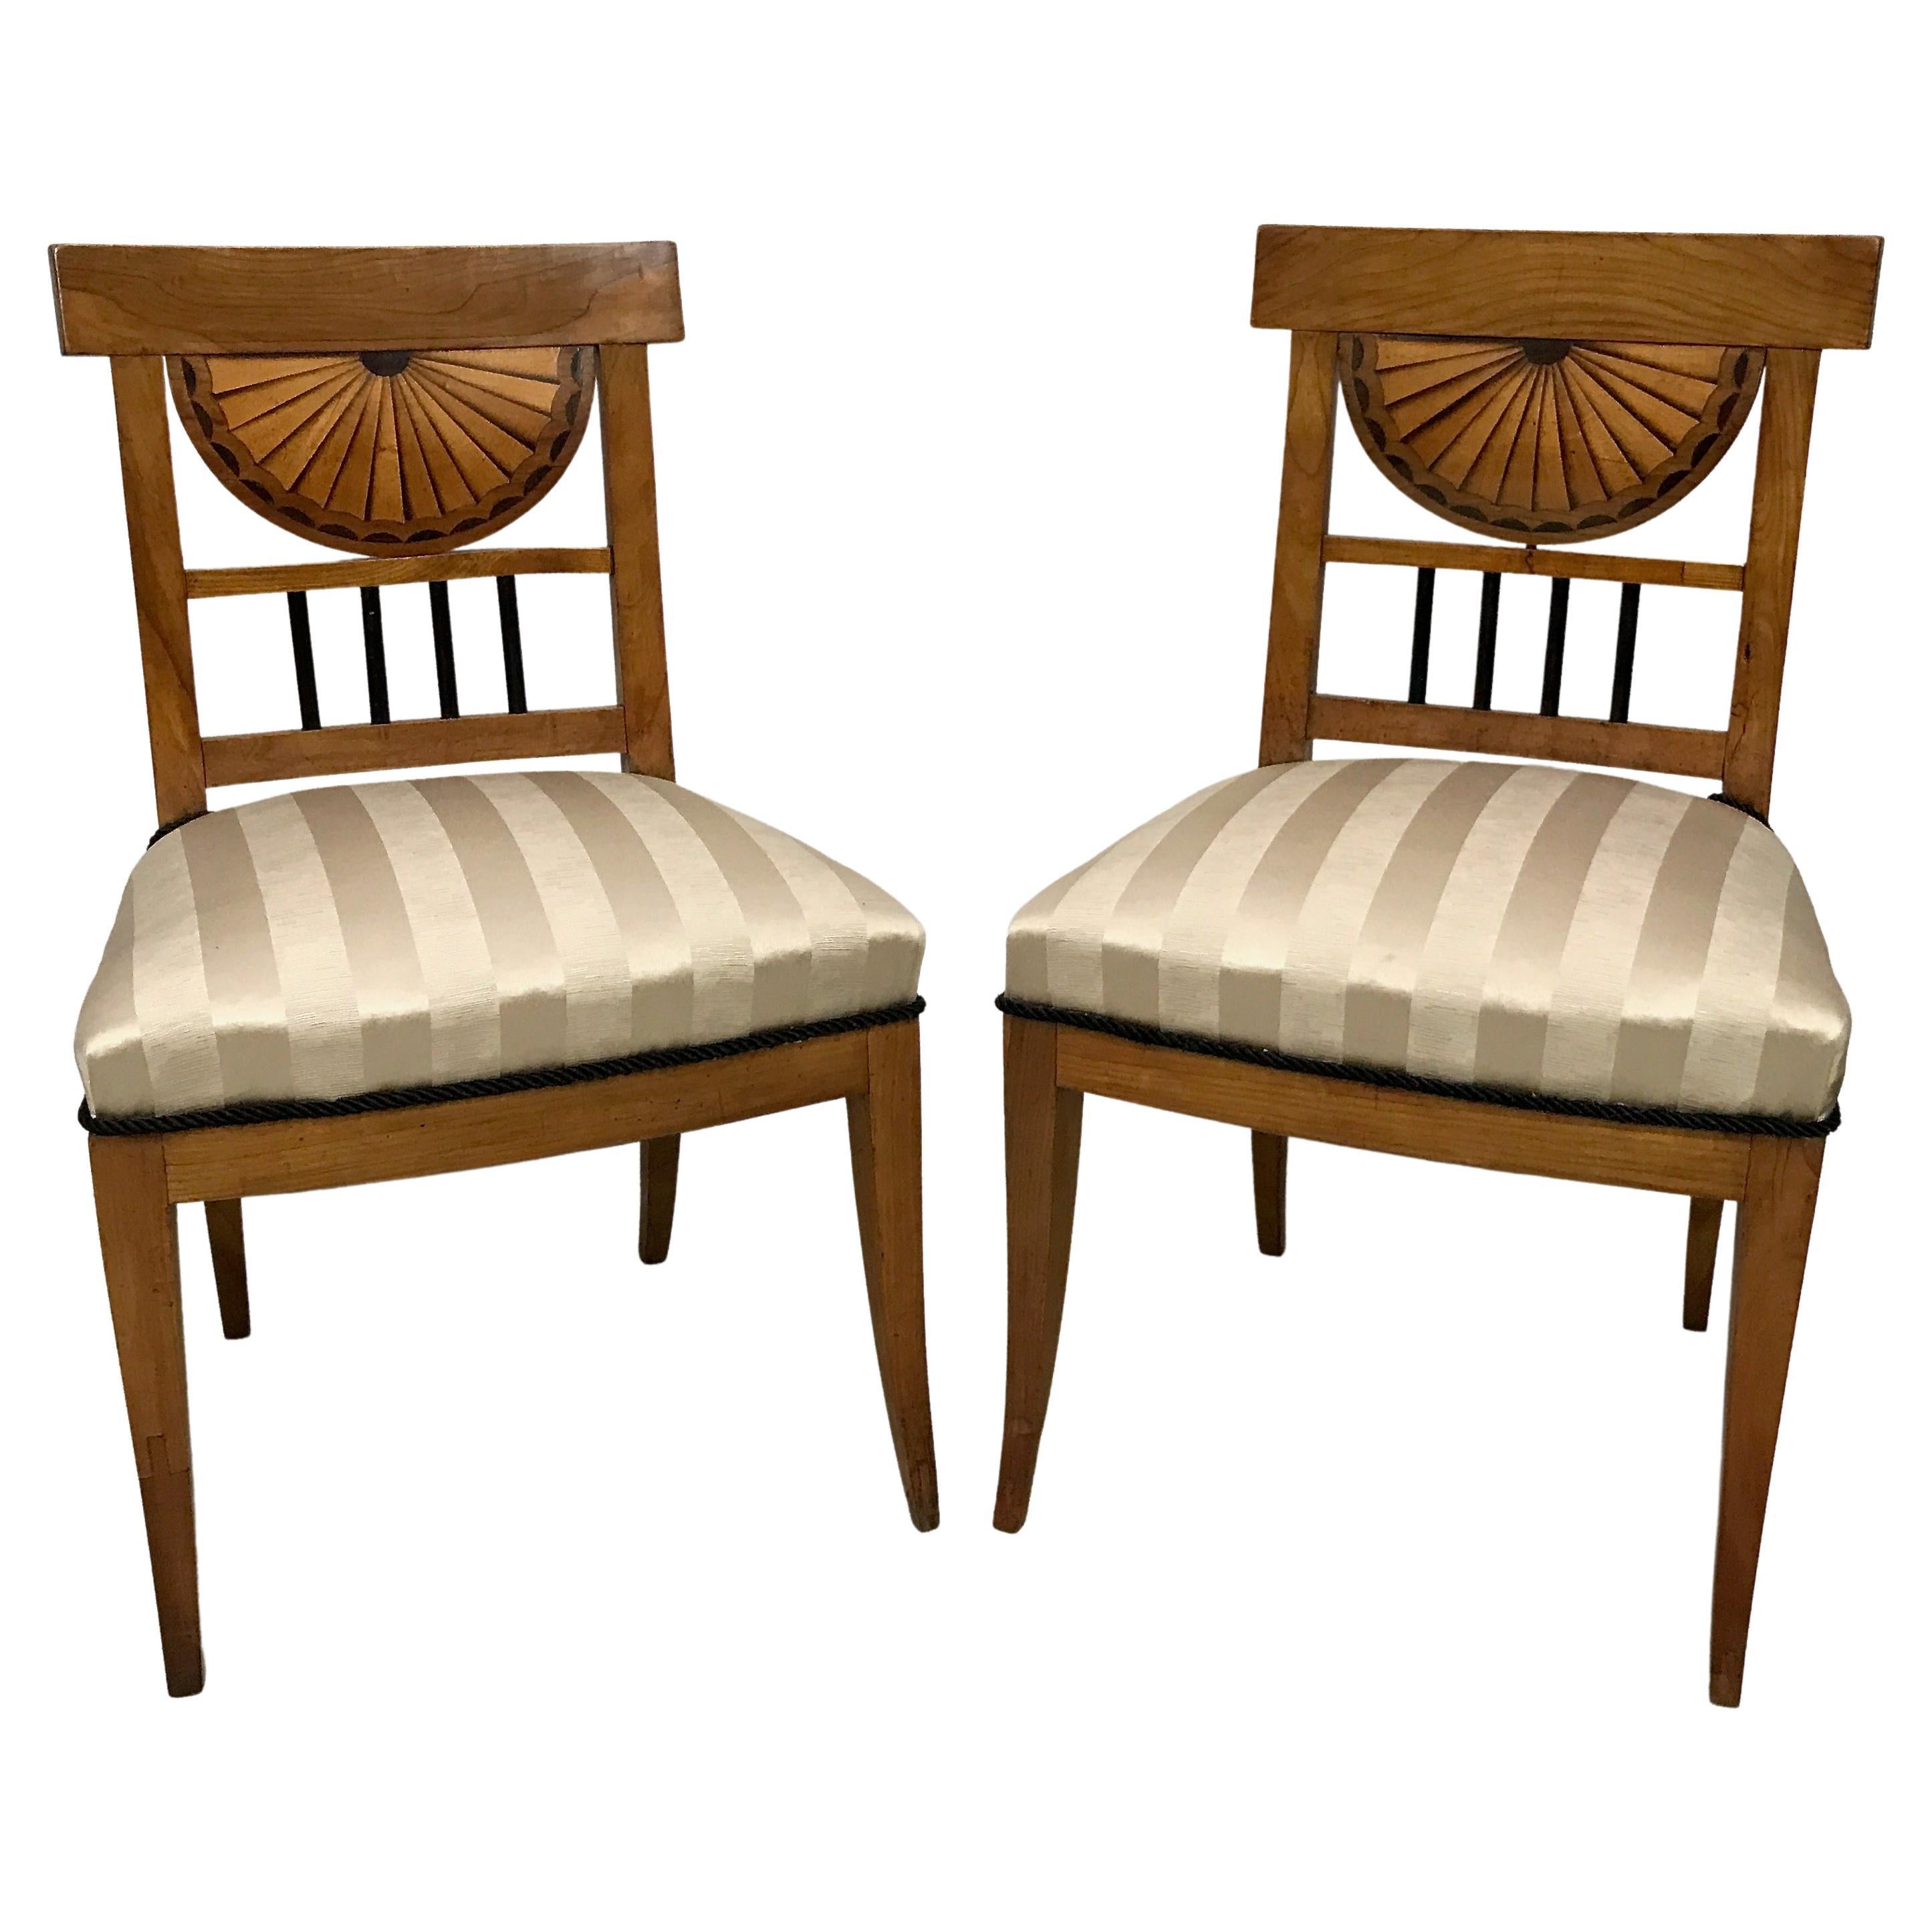 Biedermeier-Beistellstühle aus Kirschbaumholz, europäisches frühes 19. Jahrhundert, Paar